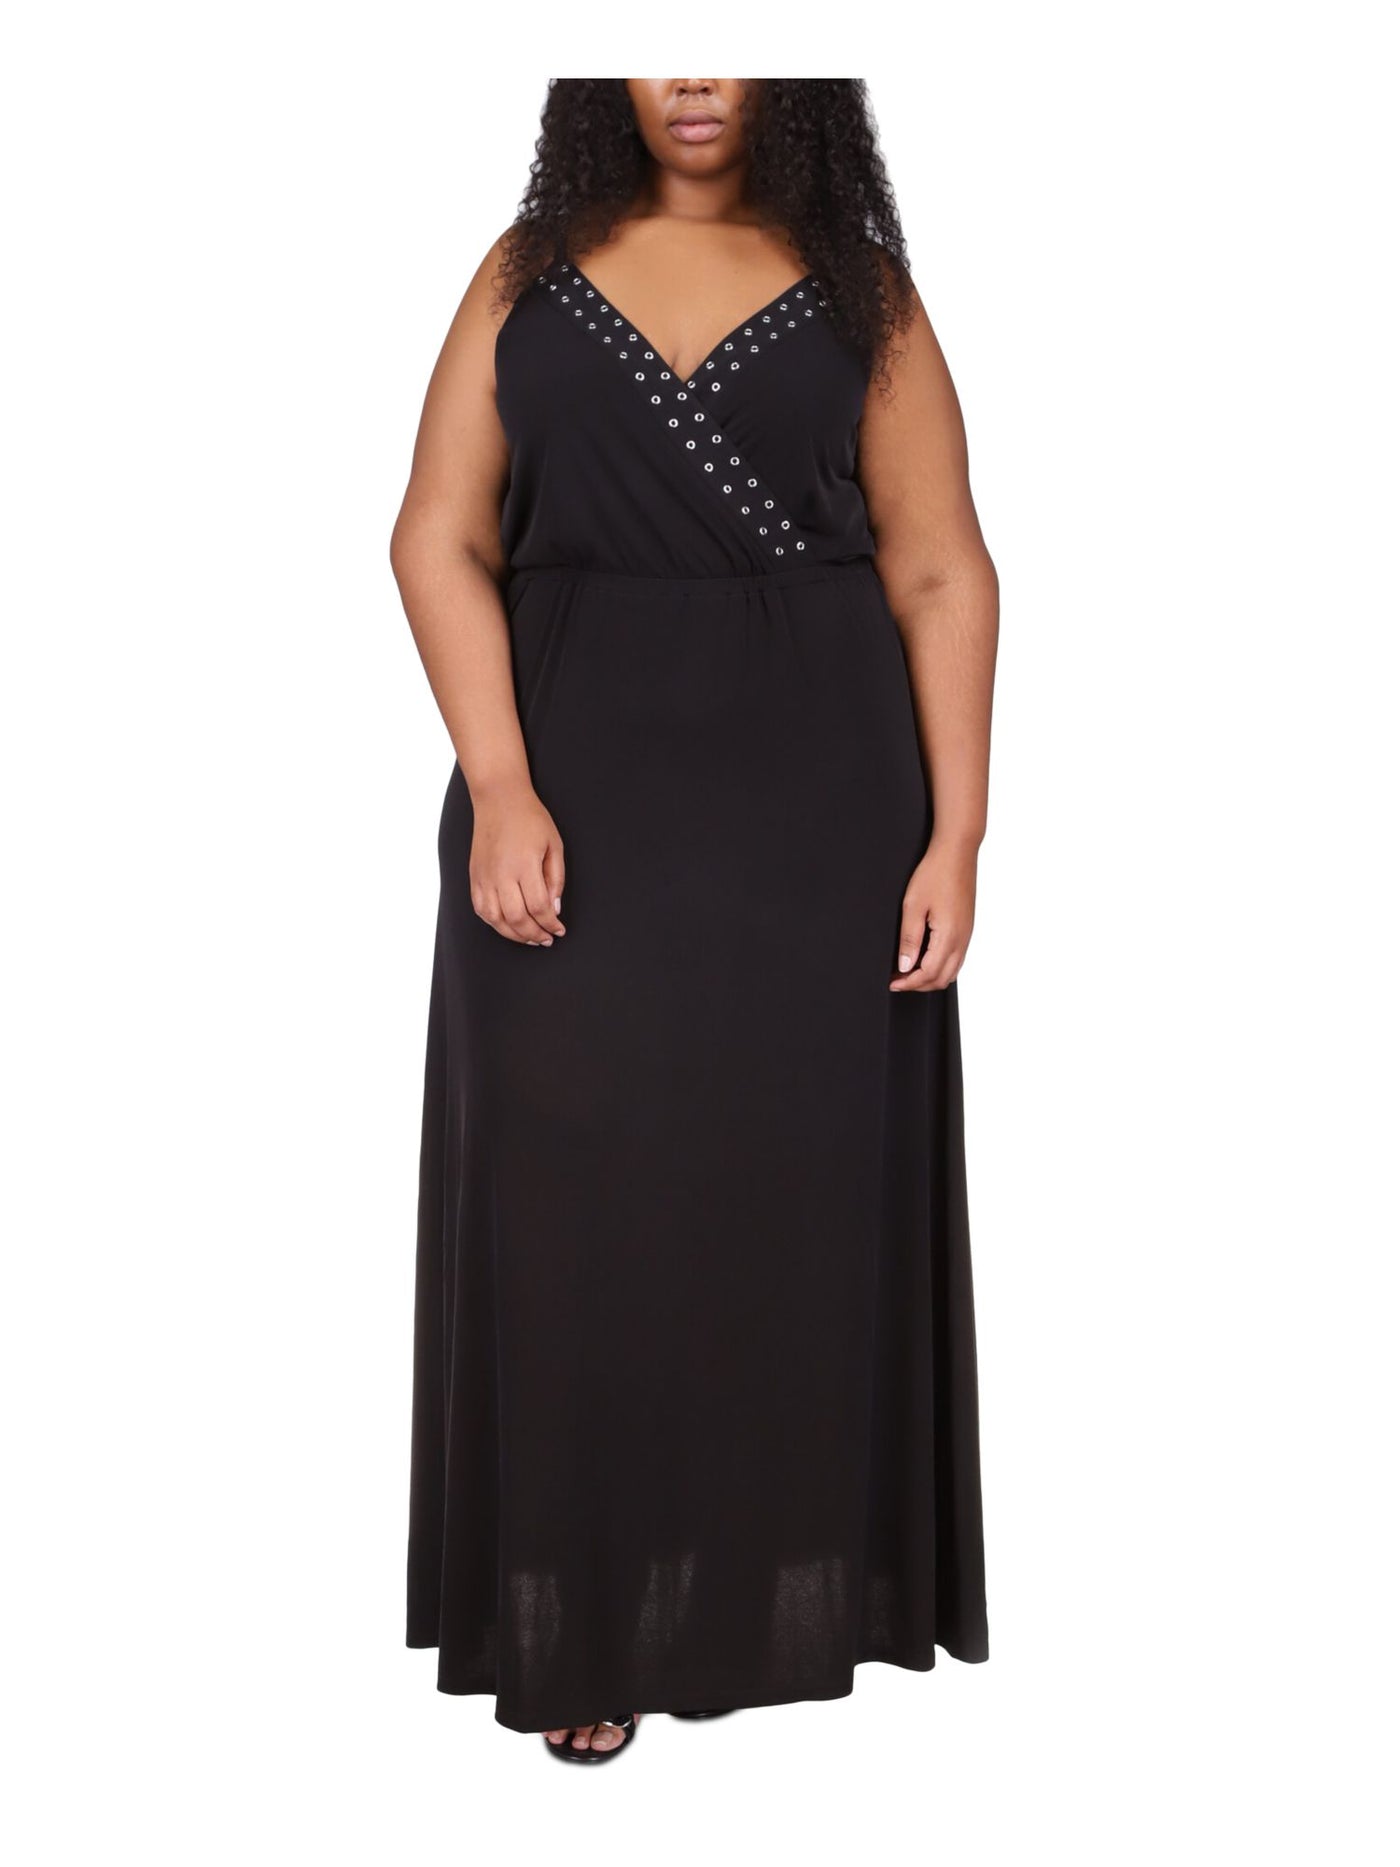 MICHAEL KORS Womens Black Adjustable Sheer Pullover Grommets Detail Unlined Sleeveless V Neck Full-Length Gown Dress Plus 3X